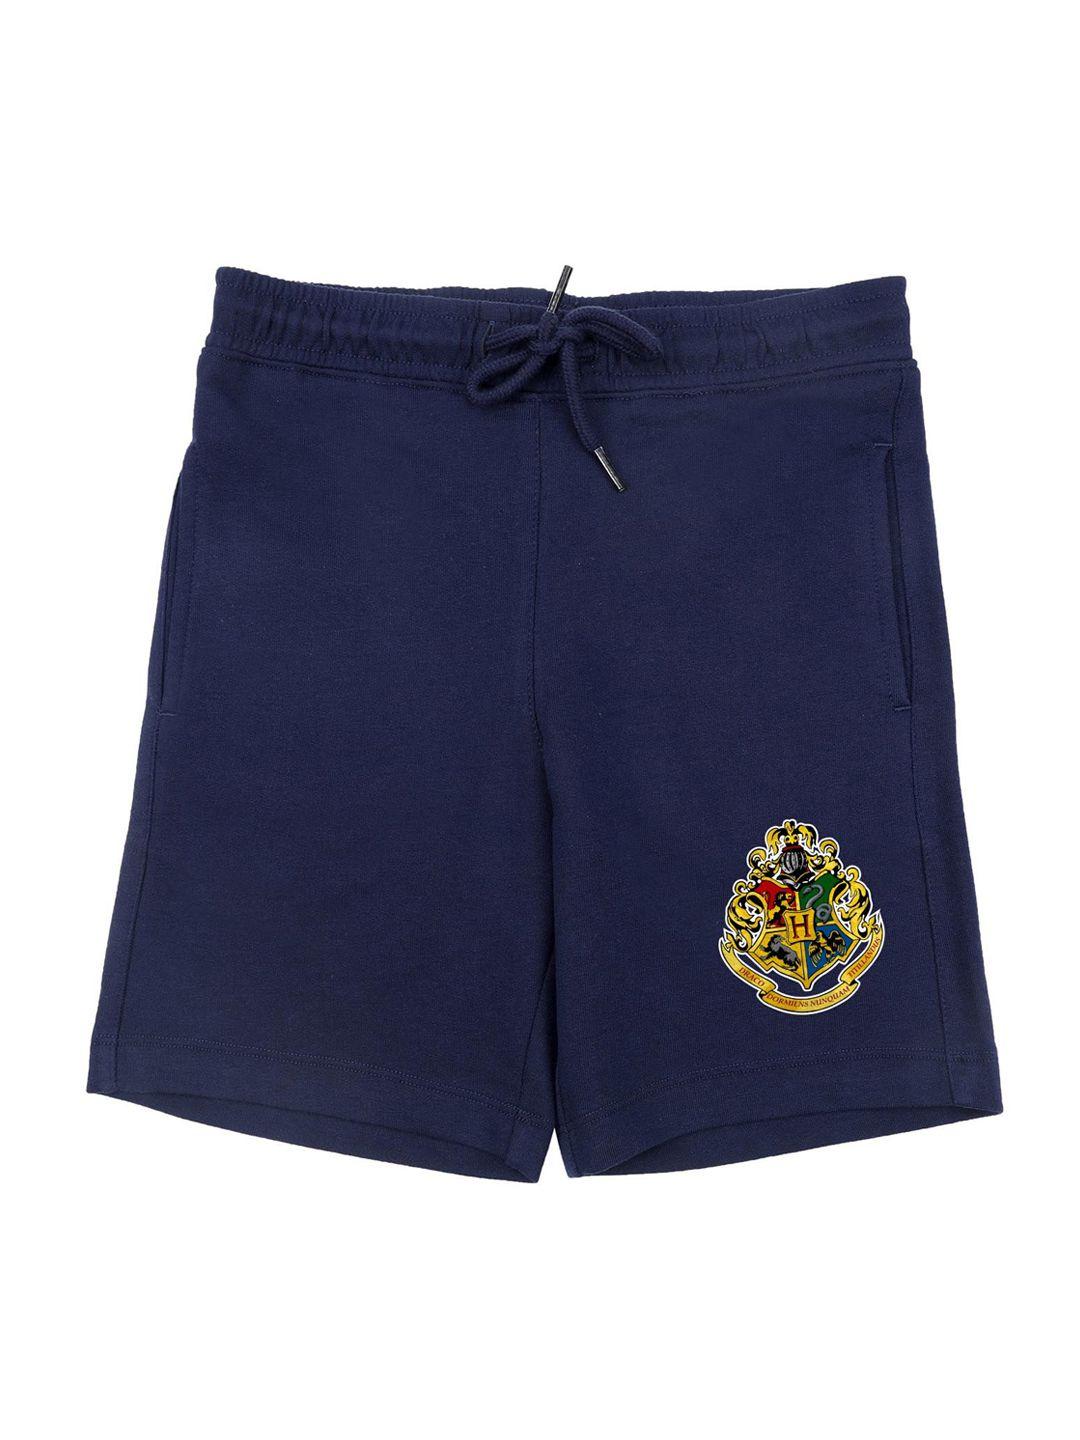 harry potter boys navy blue solid regular fit regular shorts